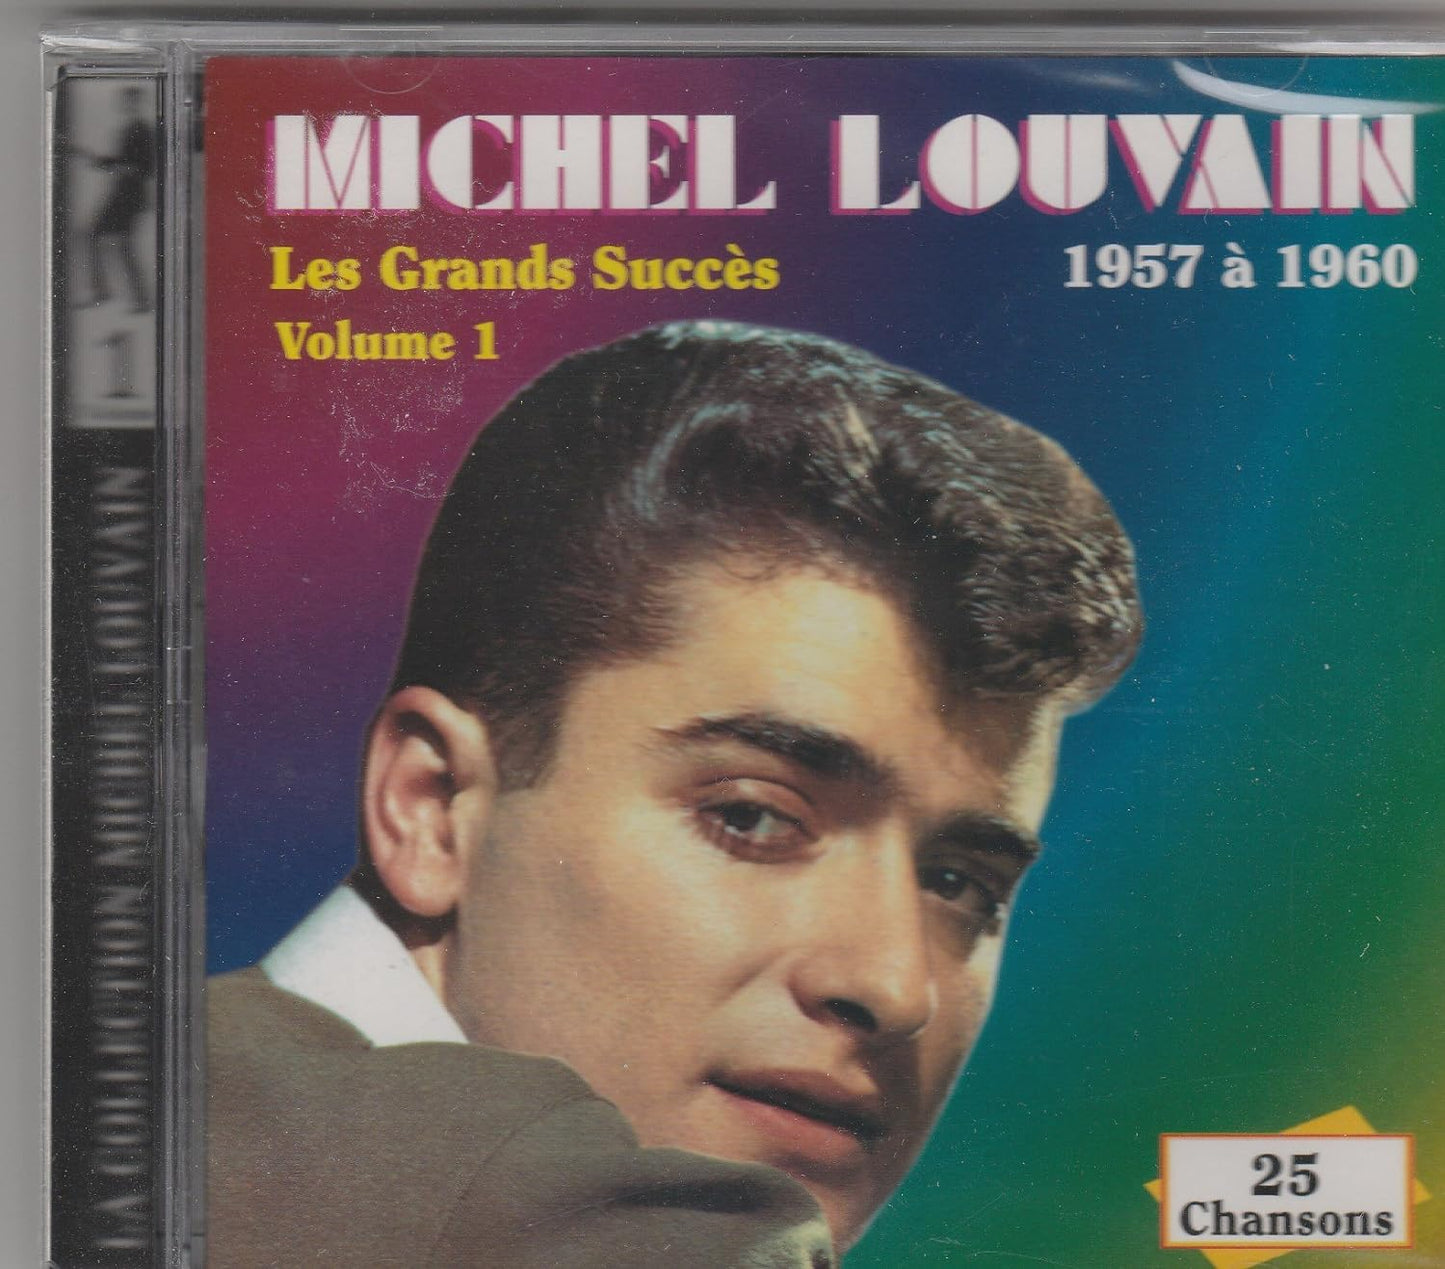 Les Grandes Succes 1 [Audio CD] Michel Louvain